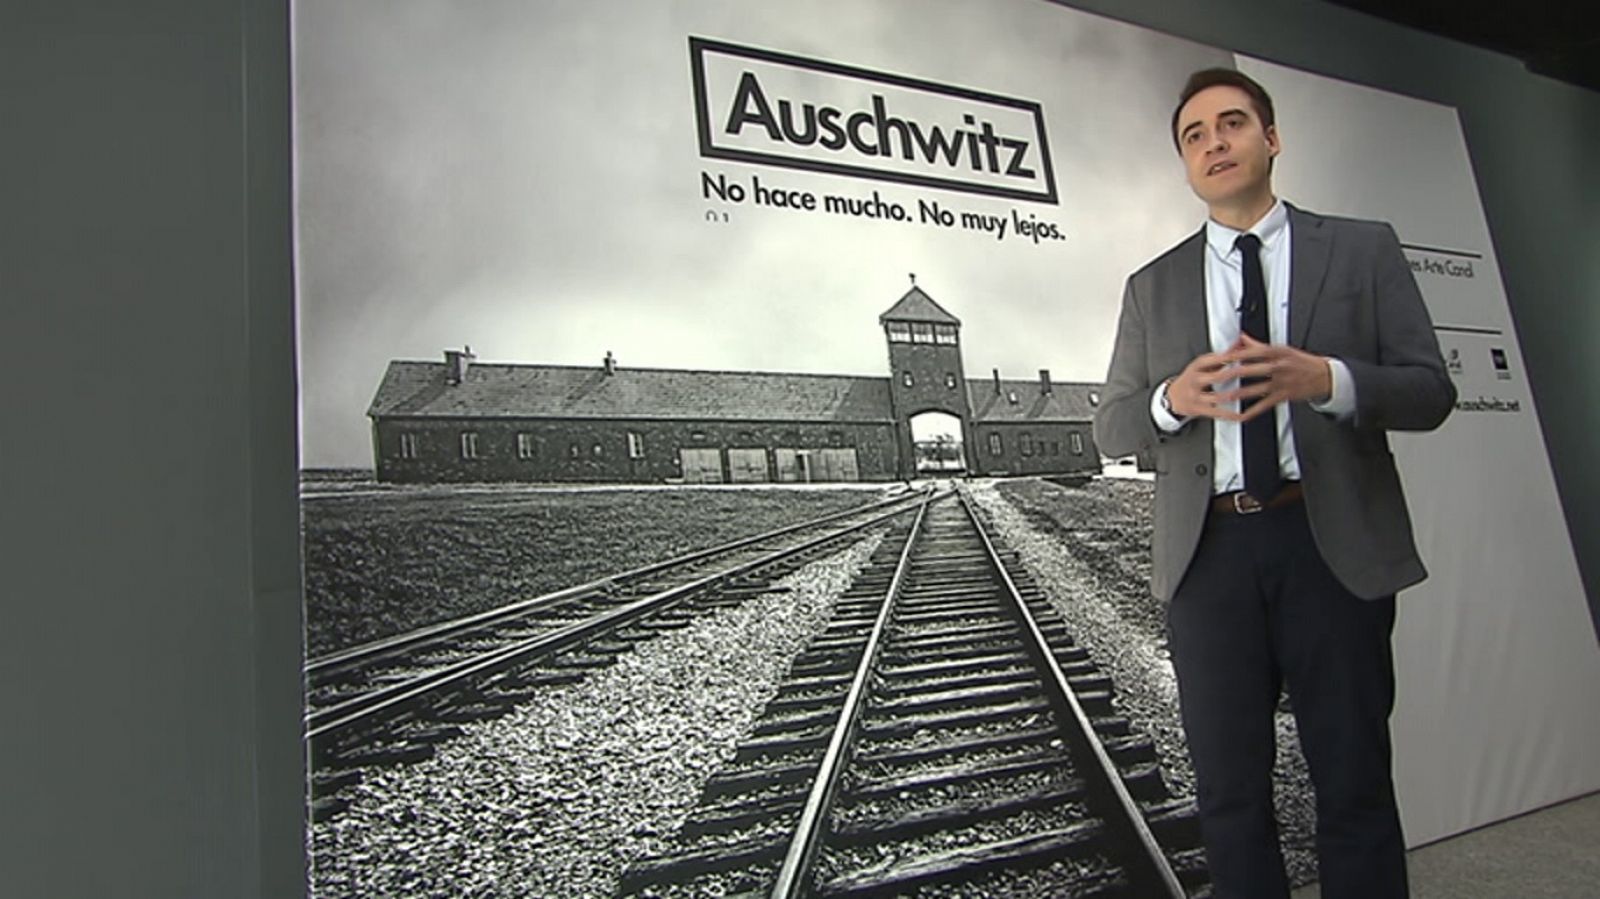 Shalom - Auschwitz: no hace mucho, no muy lejos